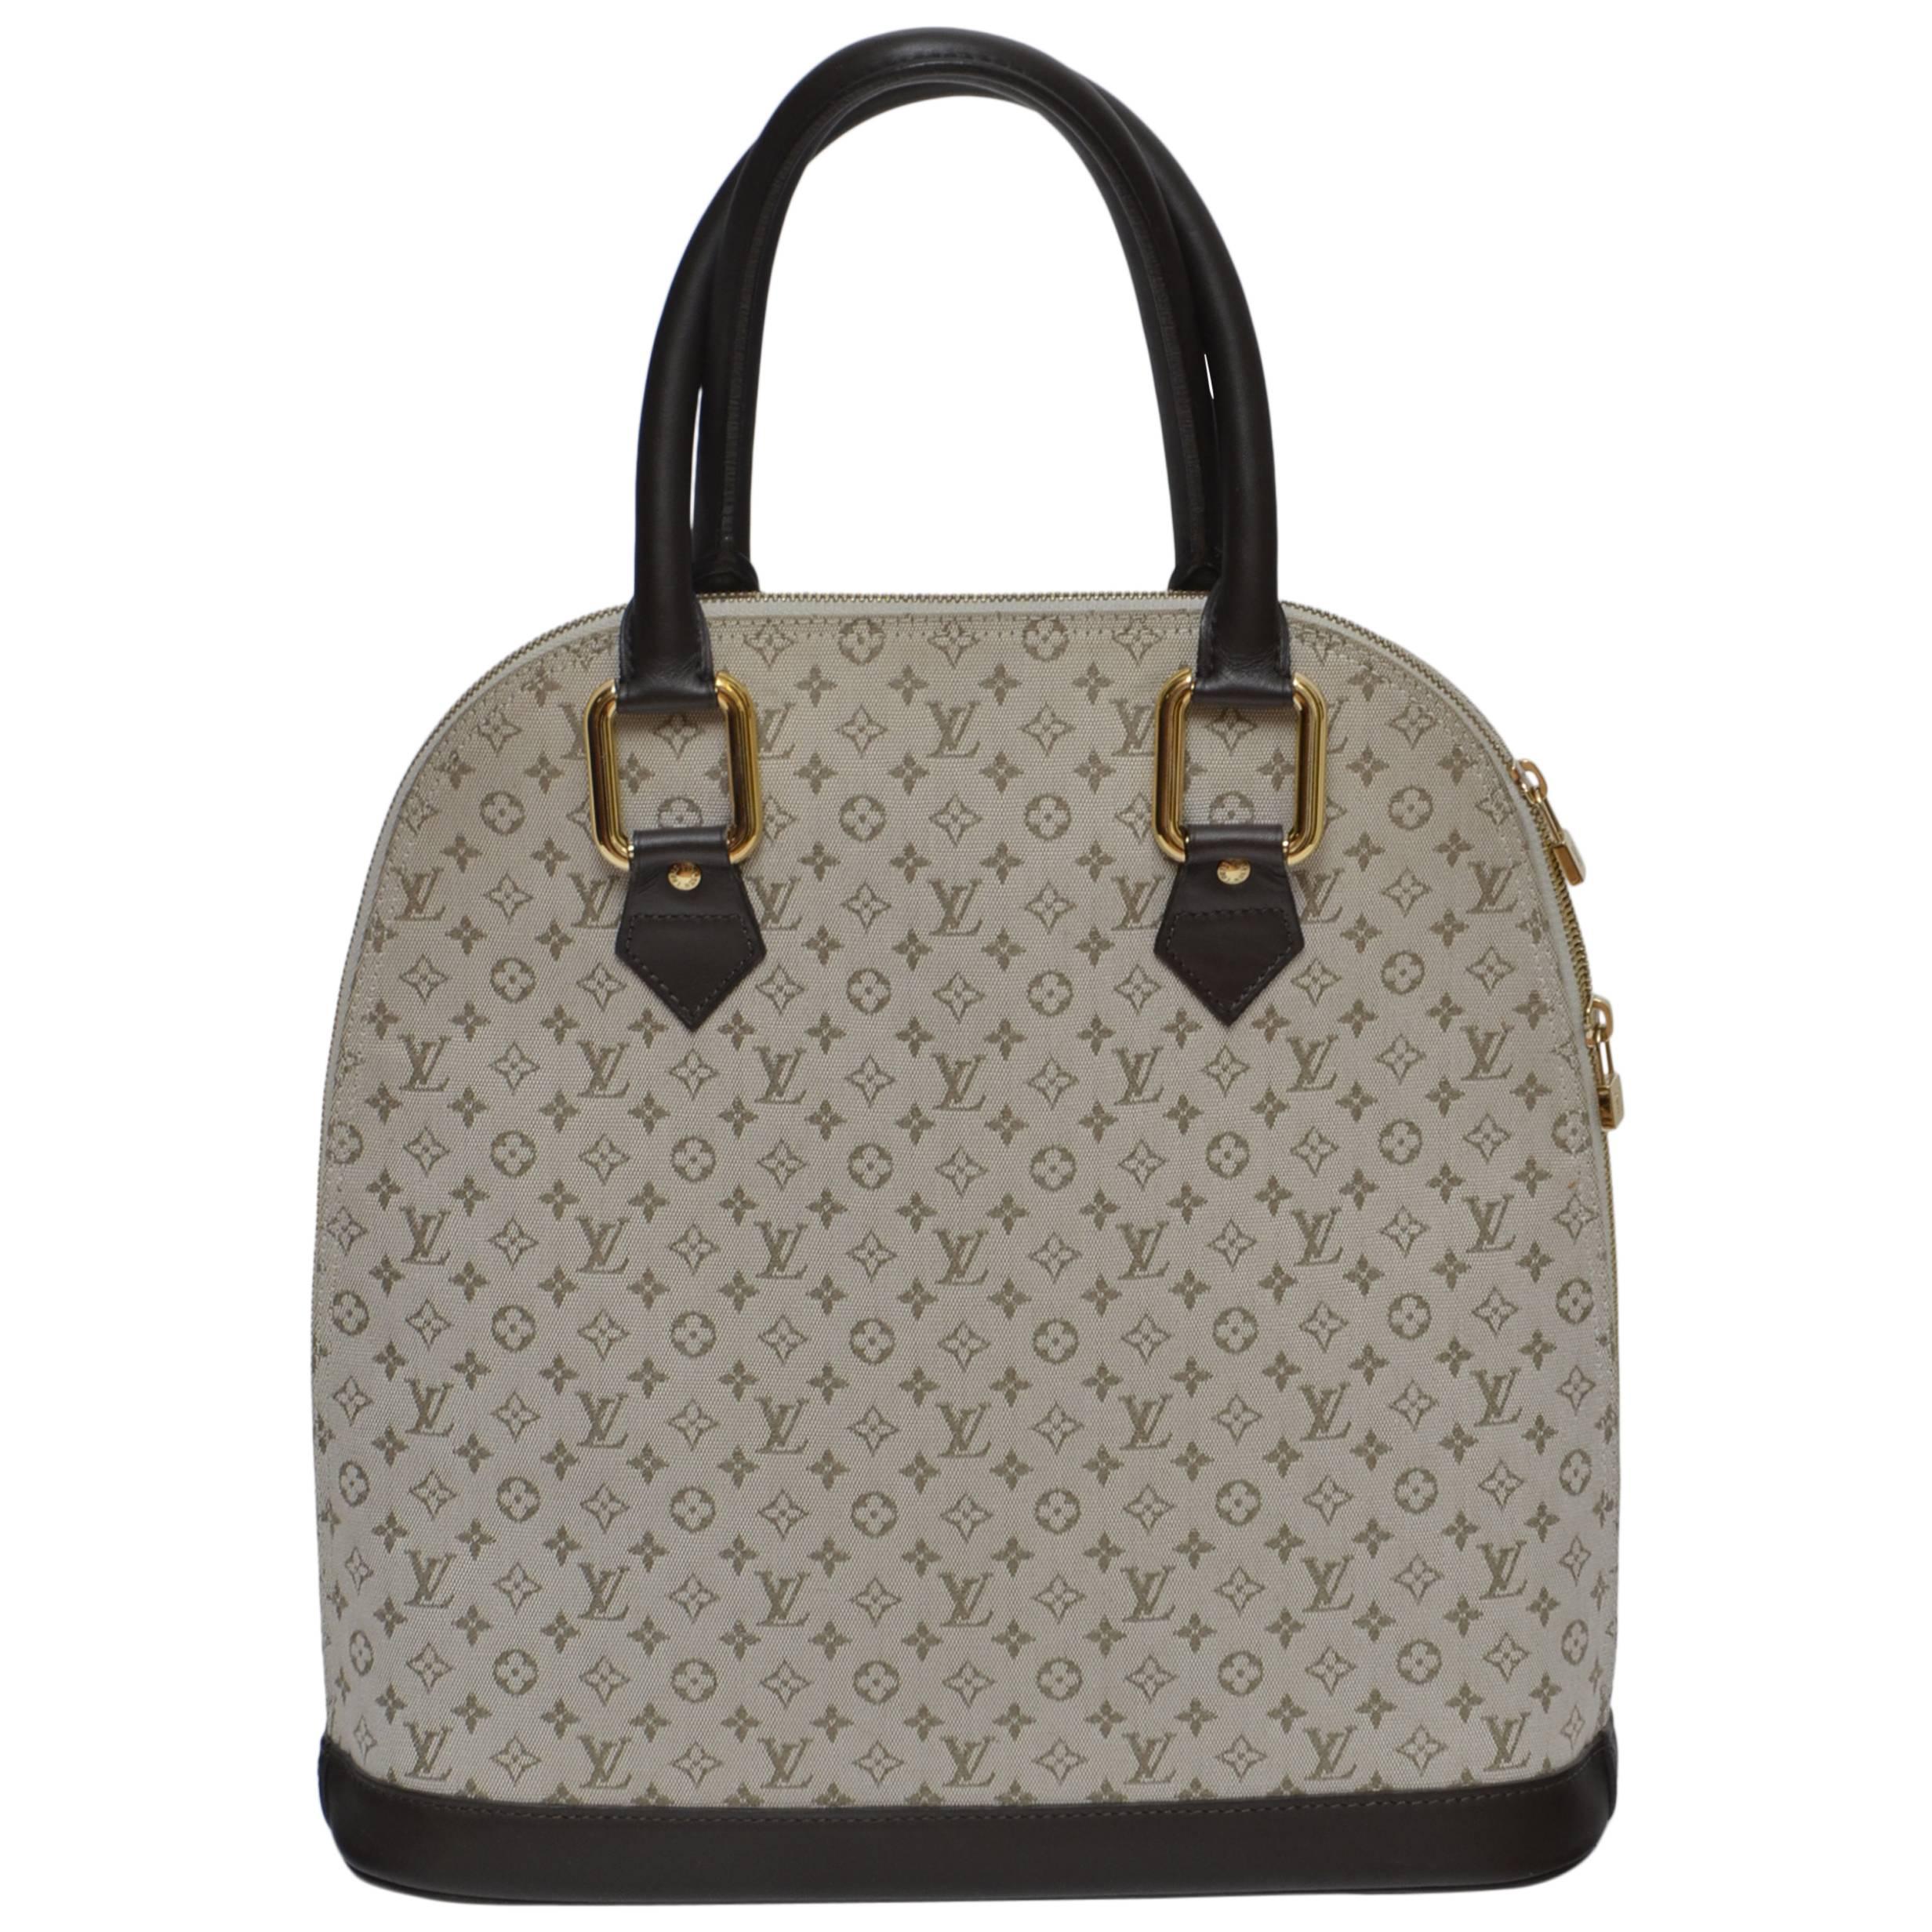 Louis Vuitton Canvas Handbag